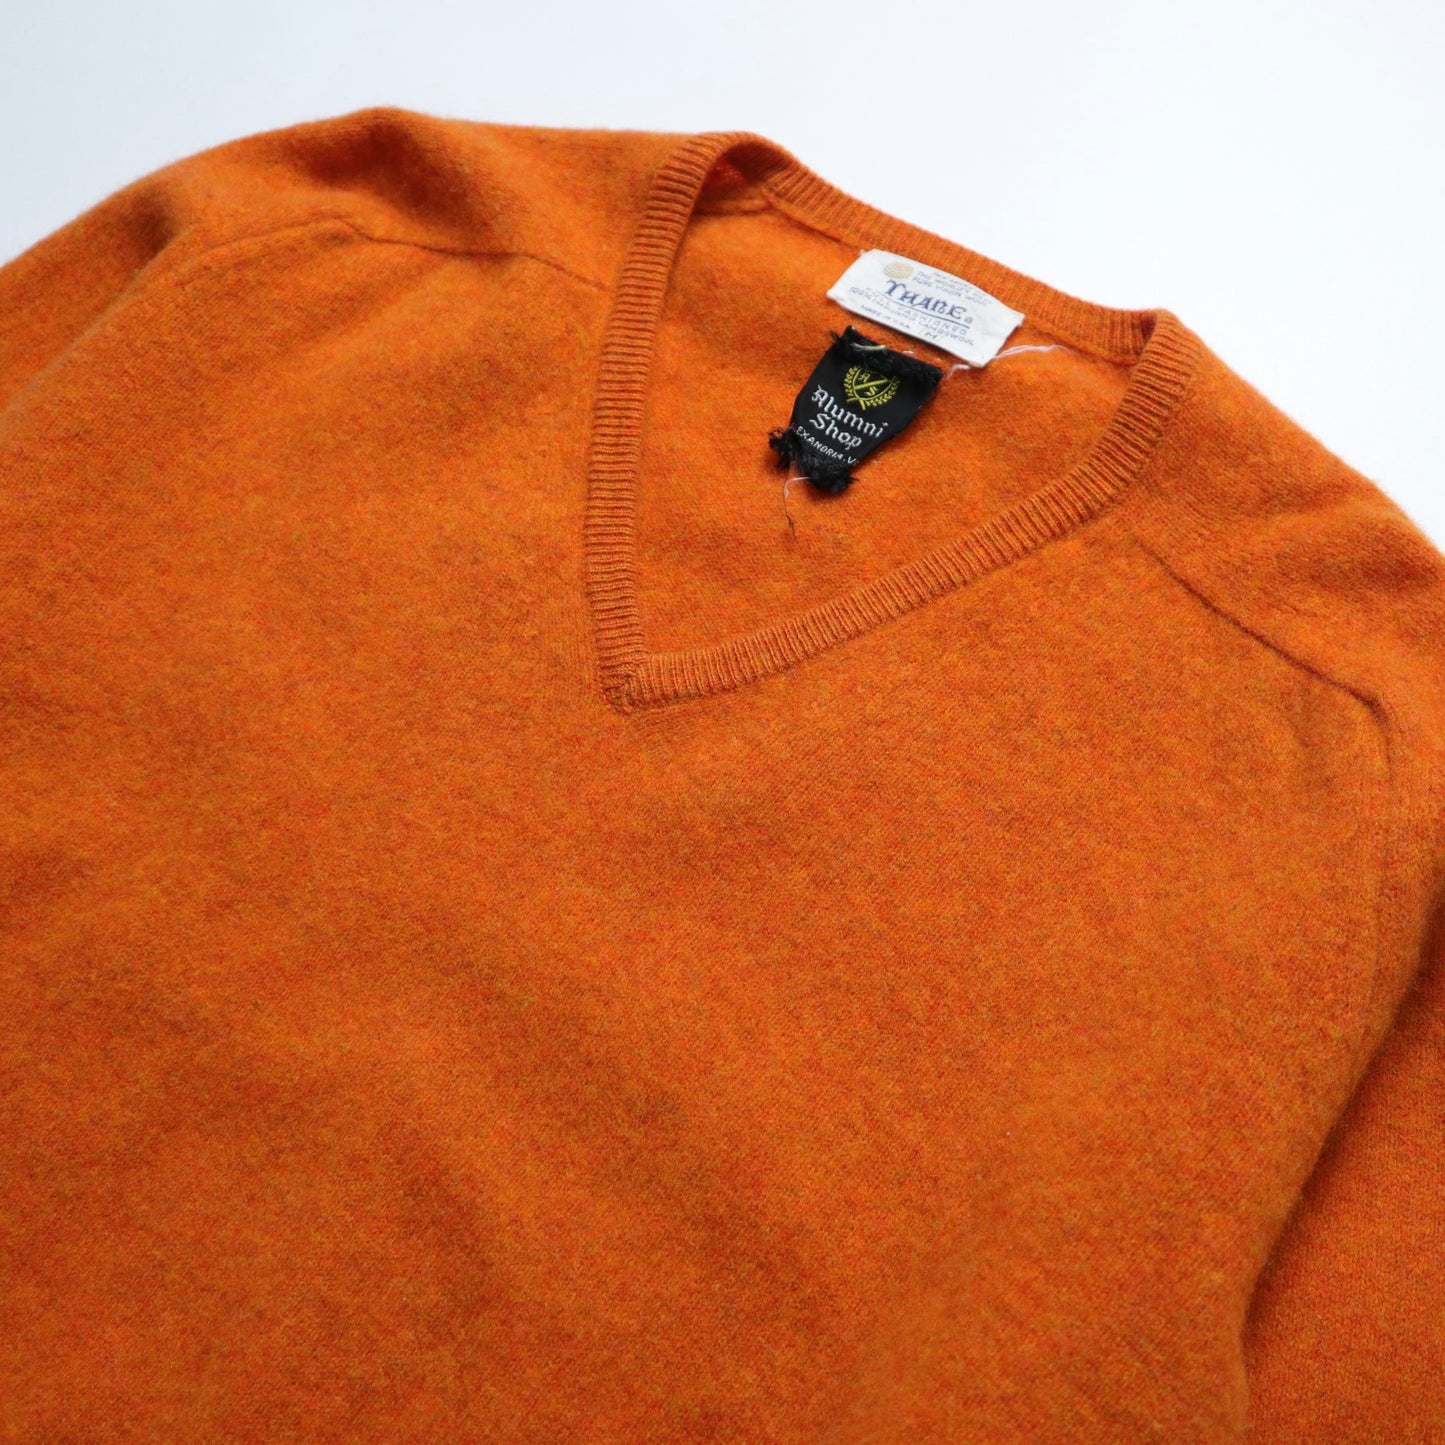 70's 美國製 橘色初剪羊毛衣 V領羊毛衣